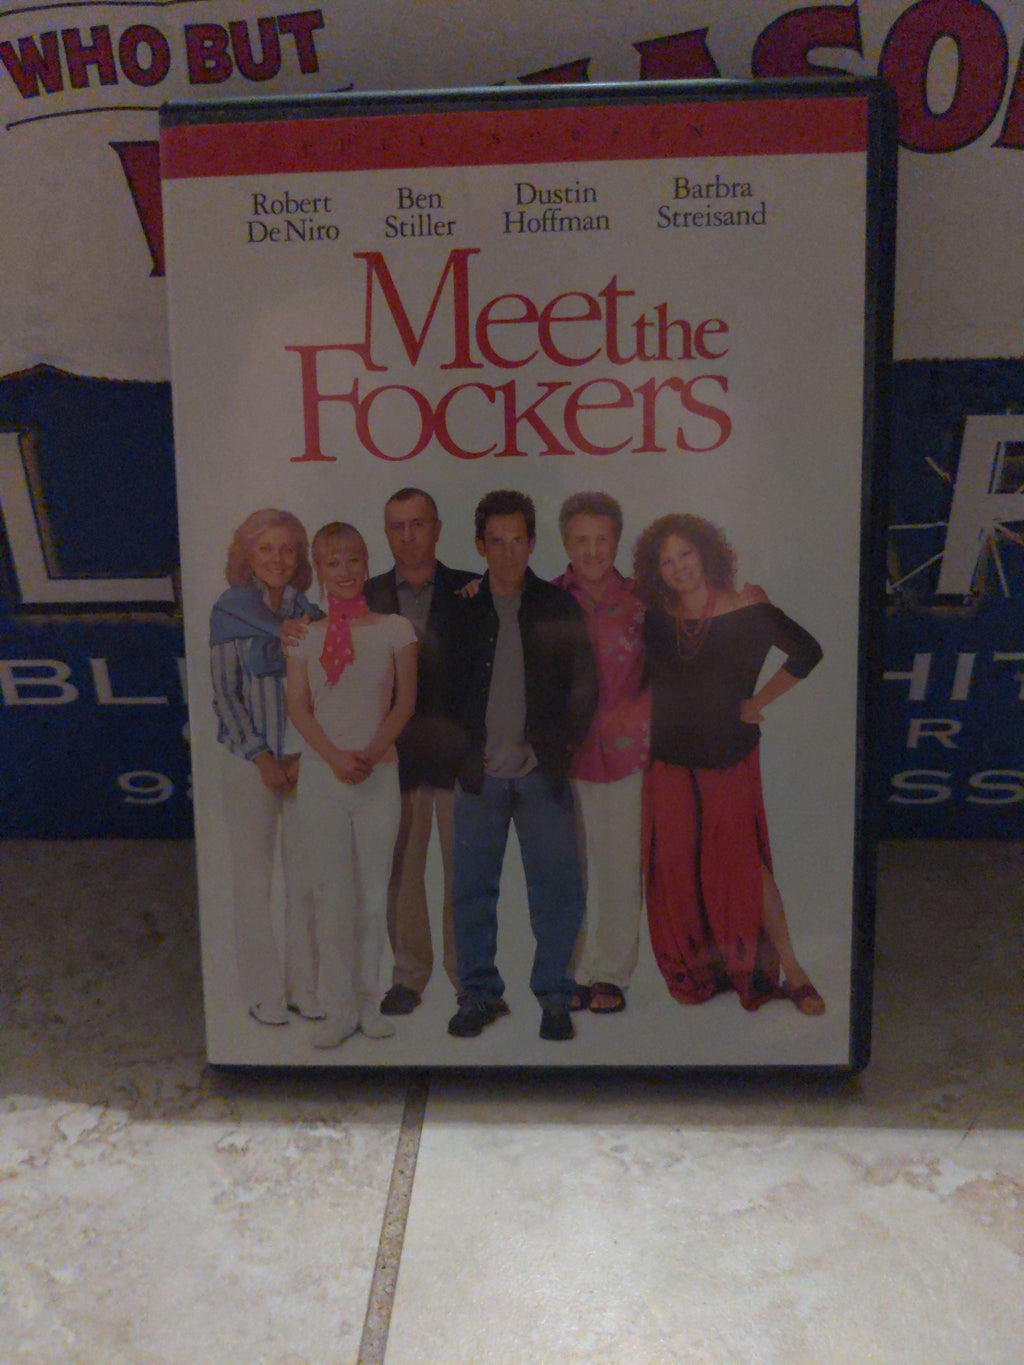 Meet The Fockers Full Screen DVD - Ben Stiller - Robert DeNiro - Dustin Hoffman